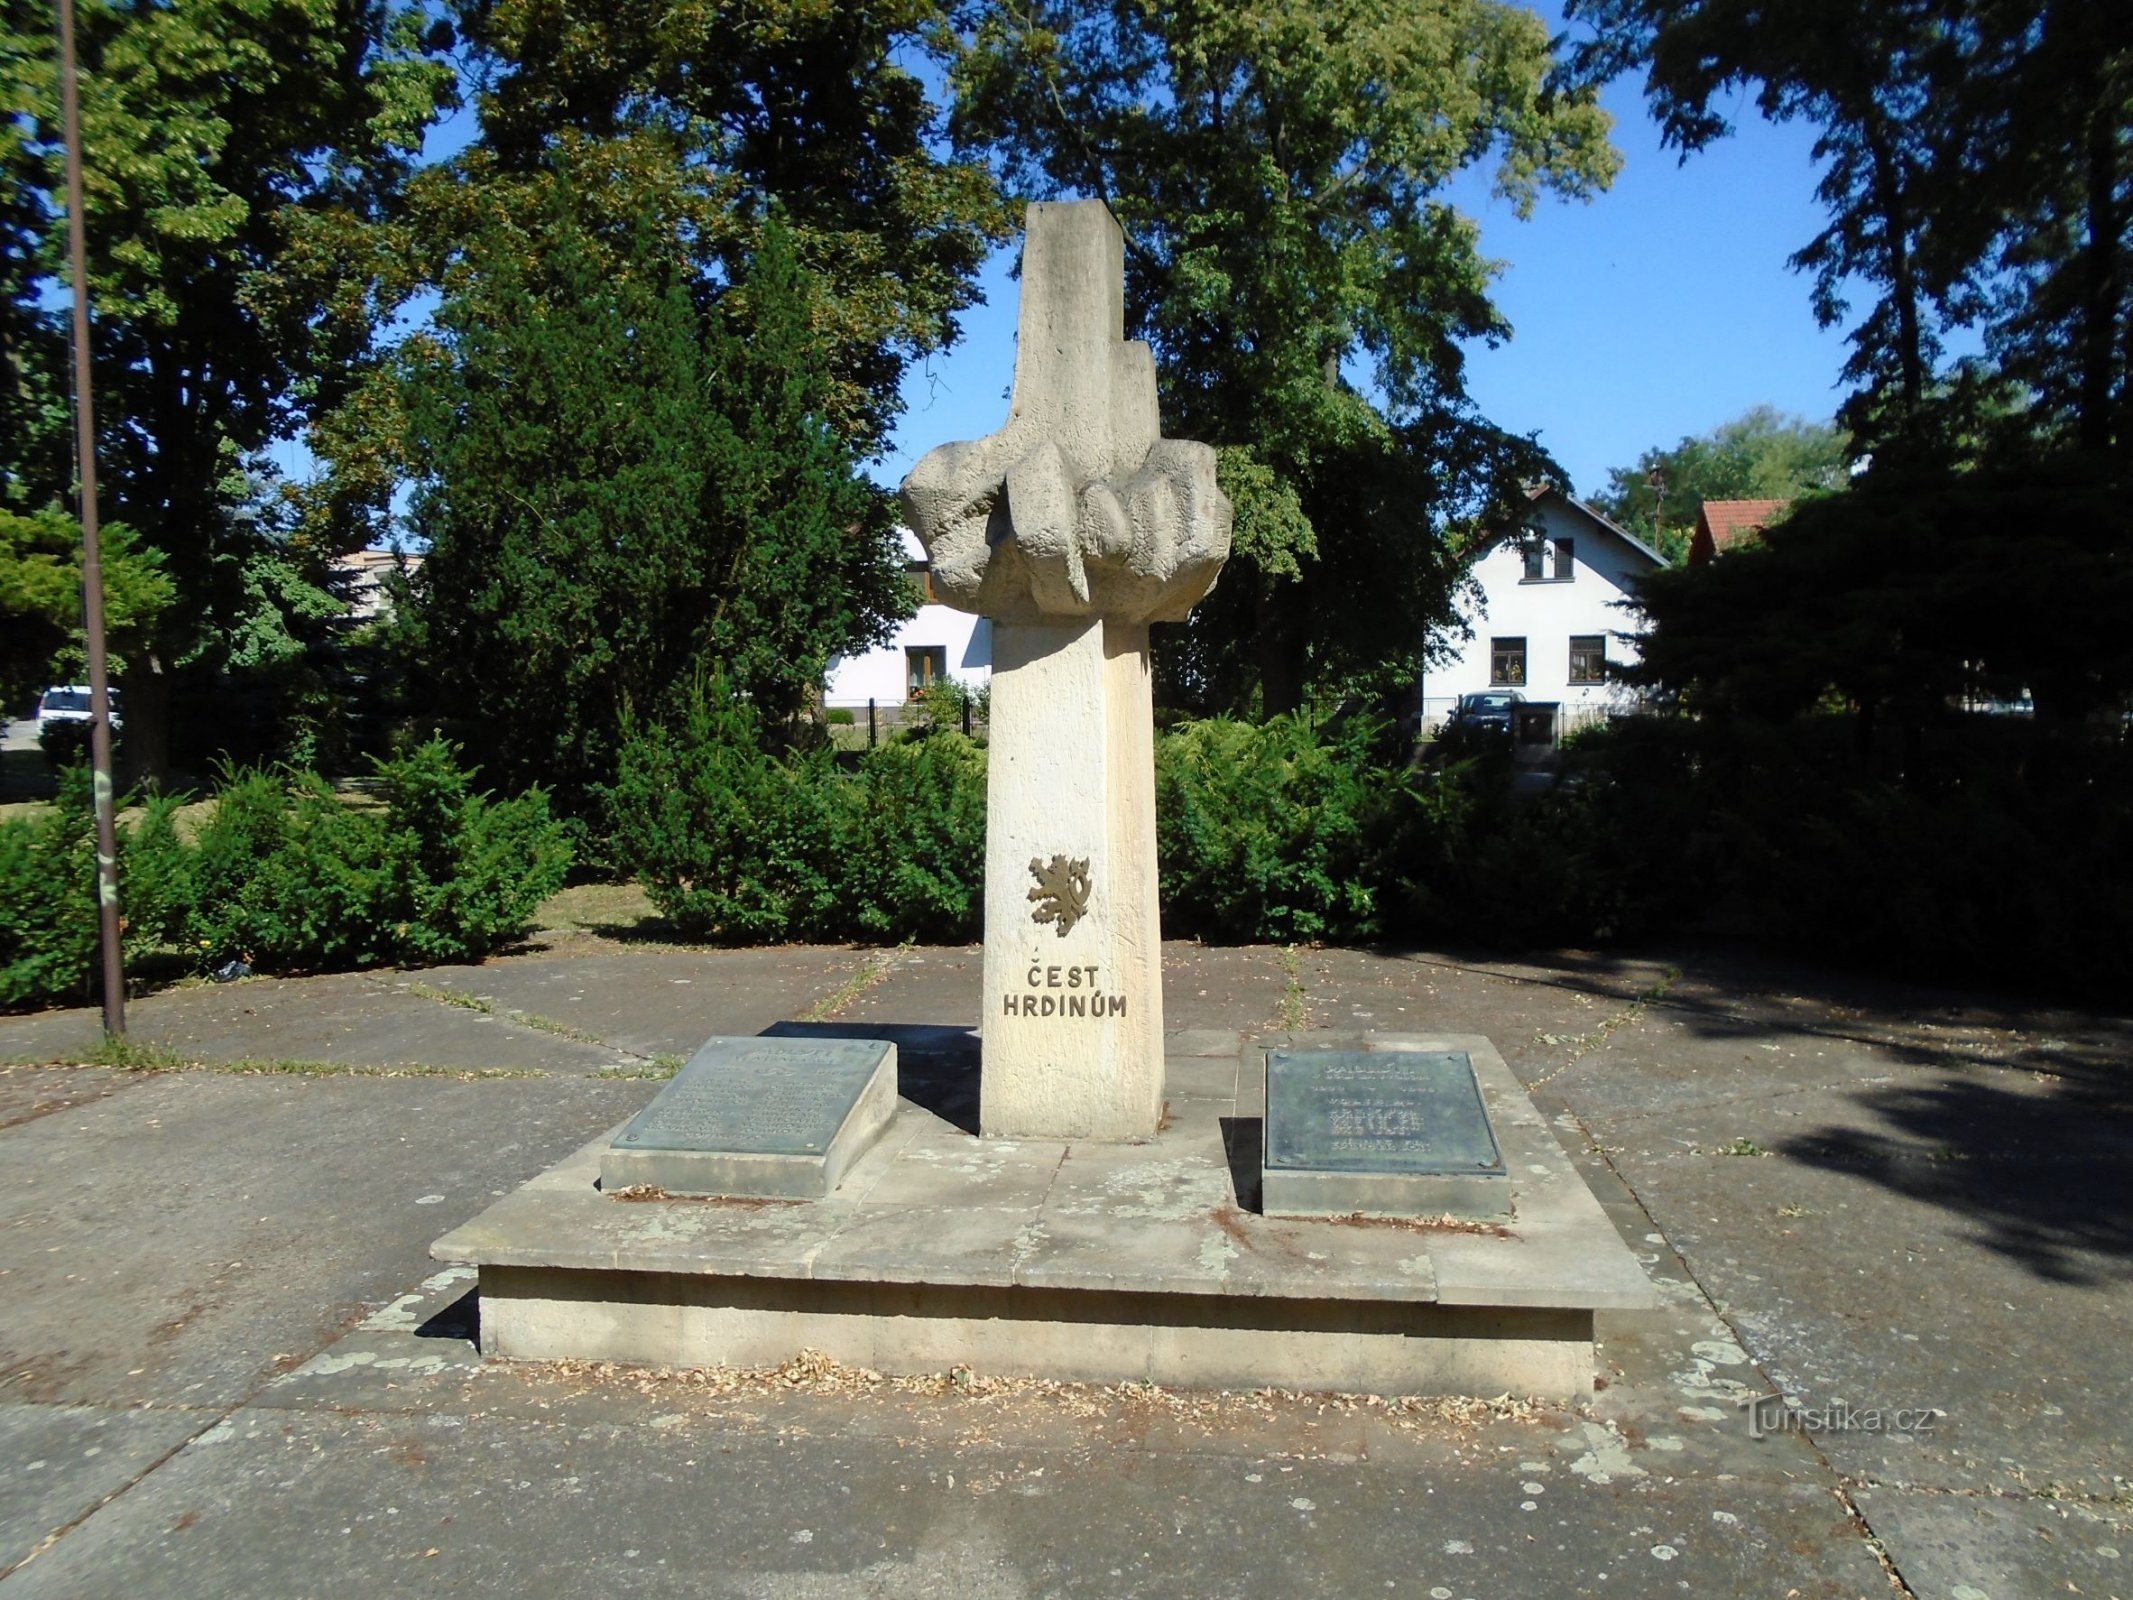 Monument voor de slachtoffers van beide wereldoorlogen (Opatovice nad Labem, 4.7.2018 juli XNUMX)